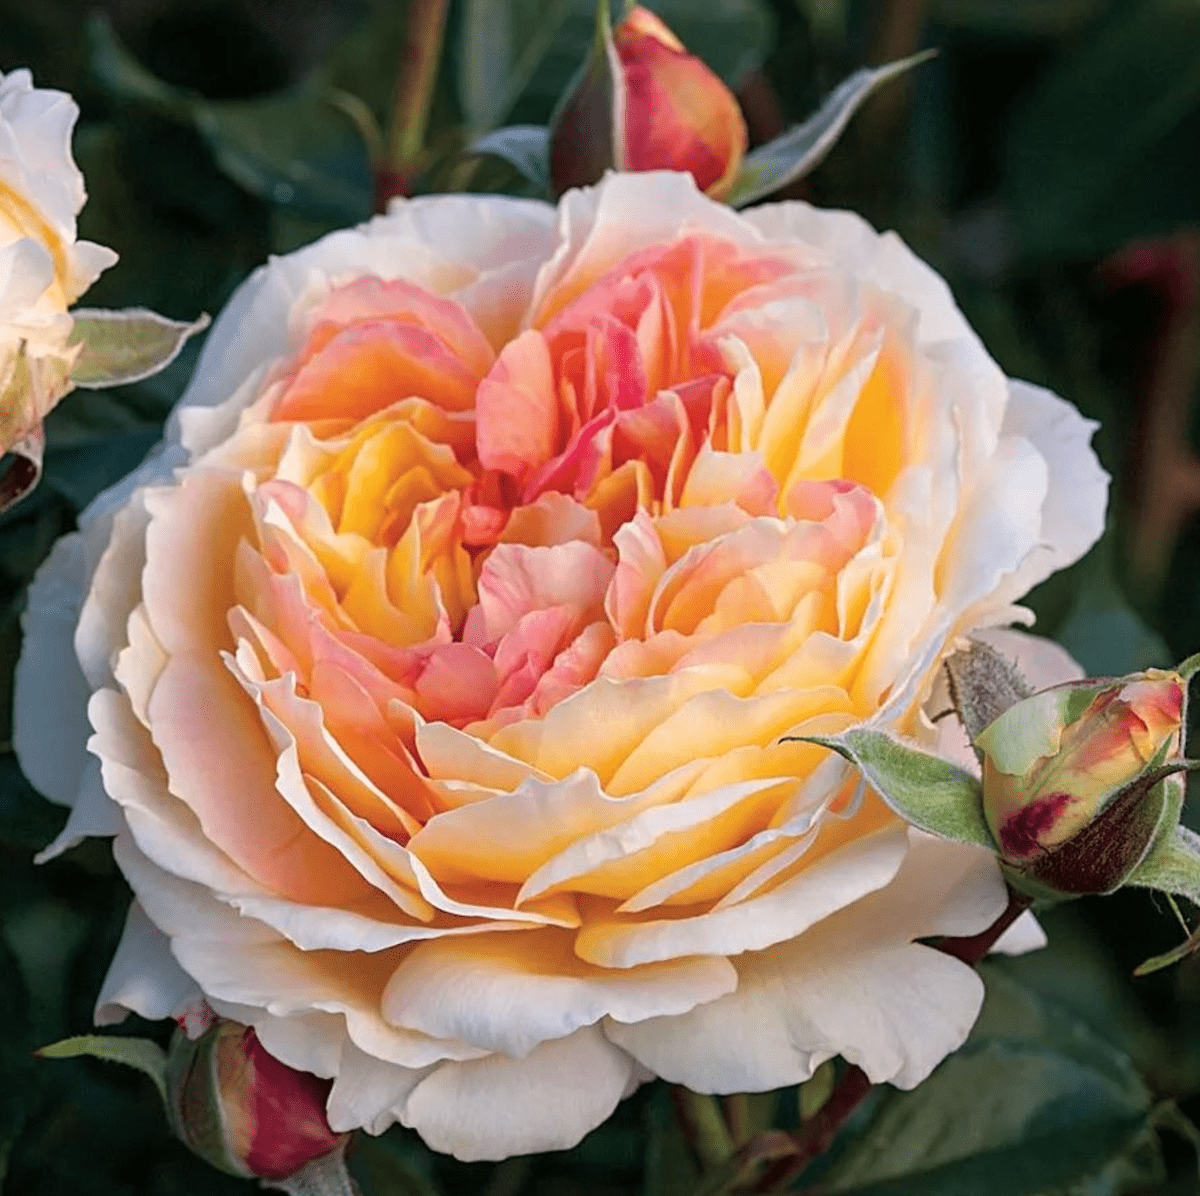 Floribunda Rose vs Grandiflora Rose: What's the Difference?